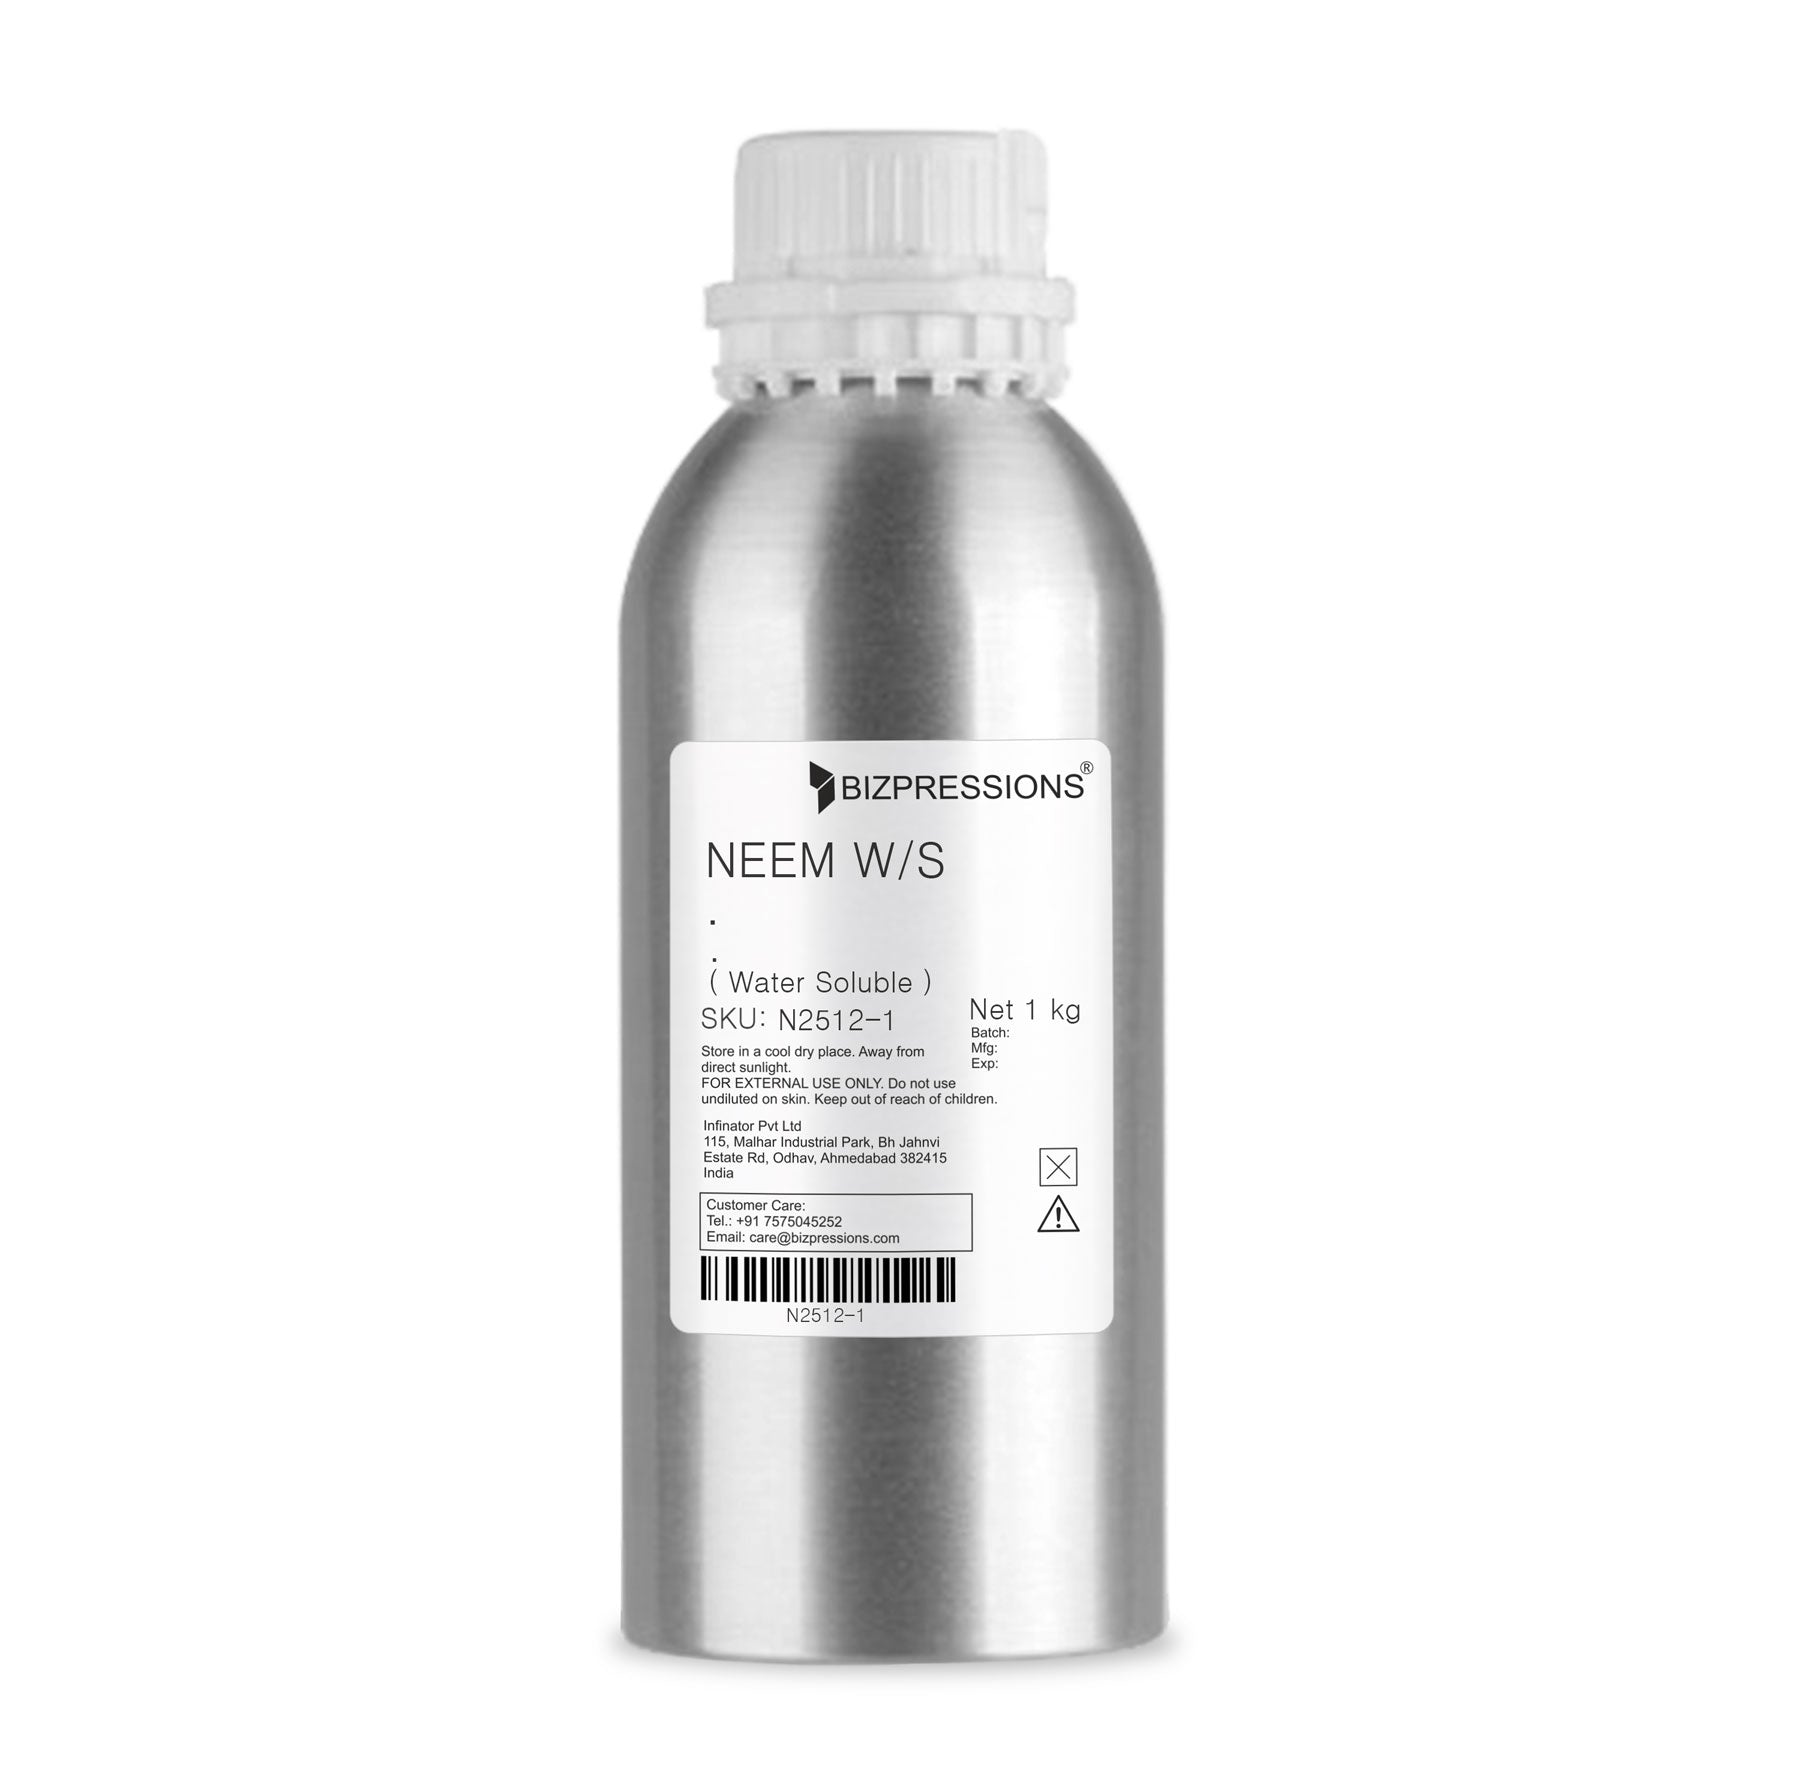 NEEM W/S - Fragrance ( Water Soluble ) 1 kg